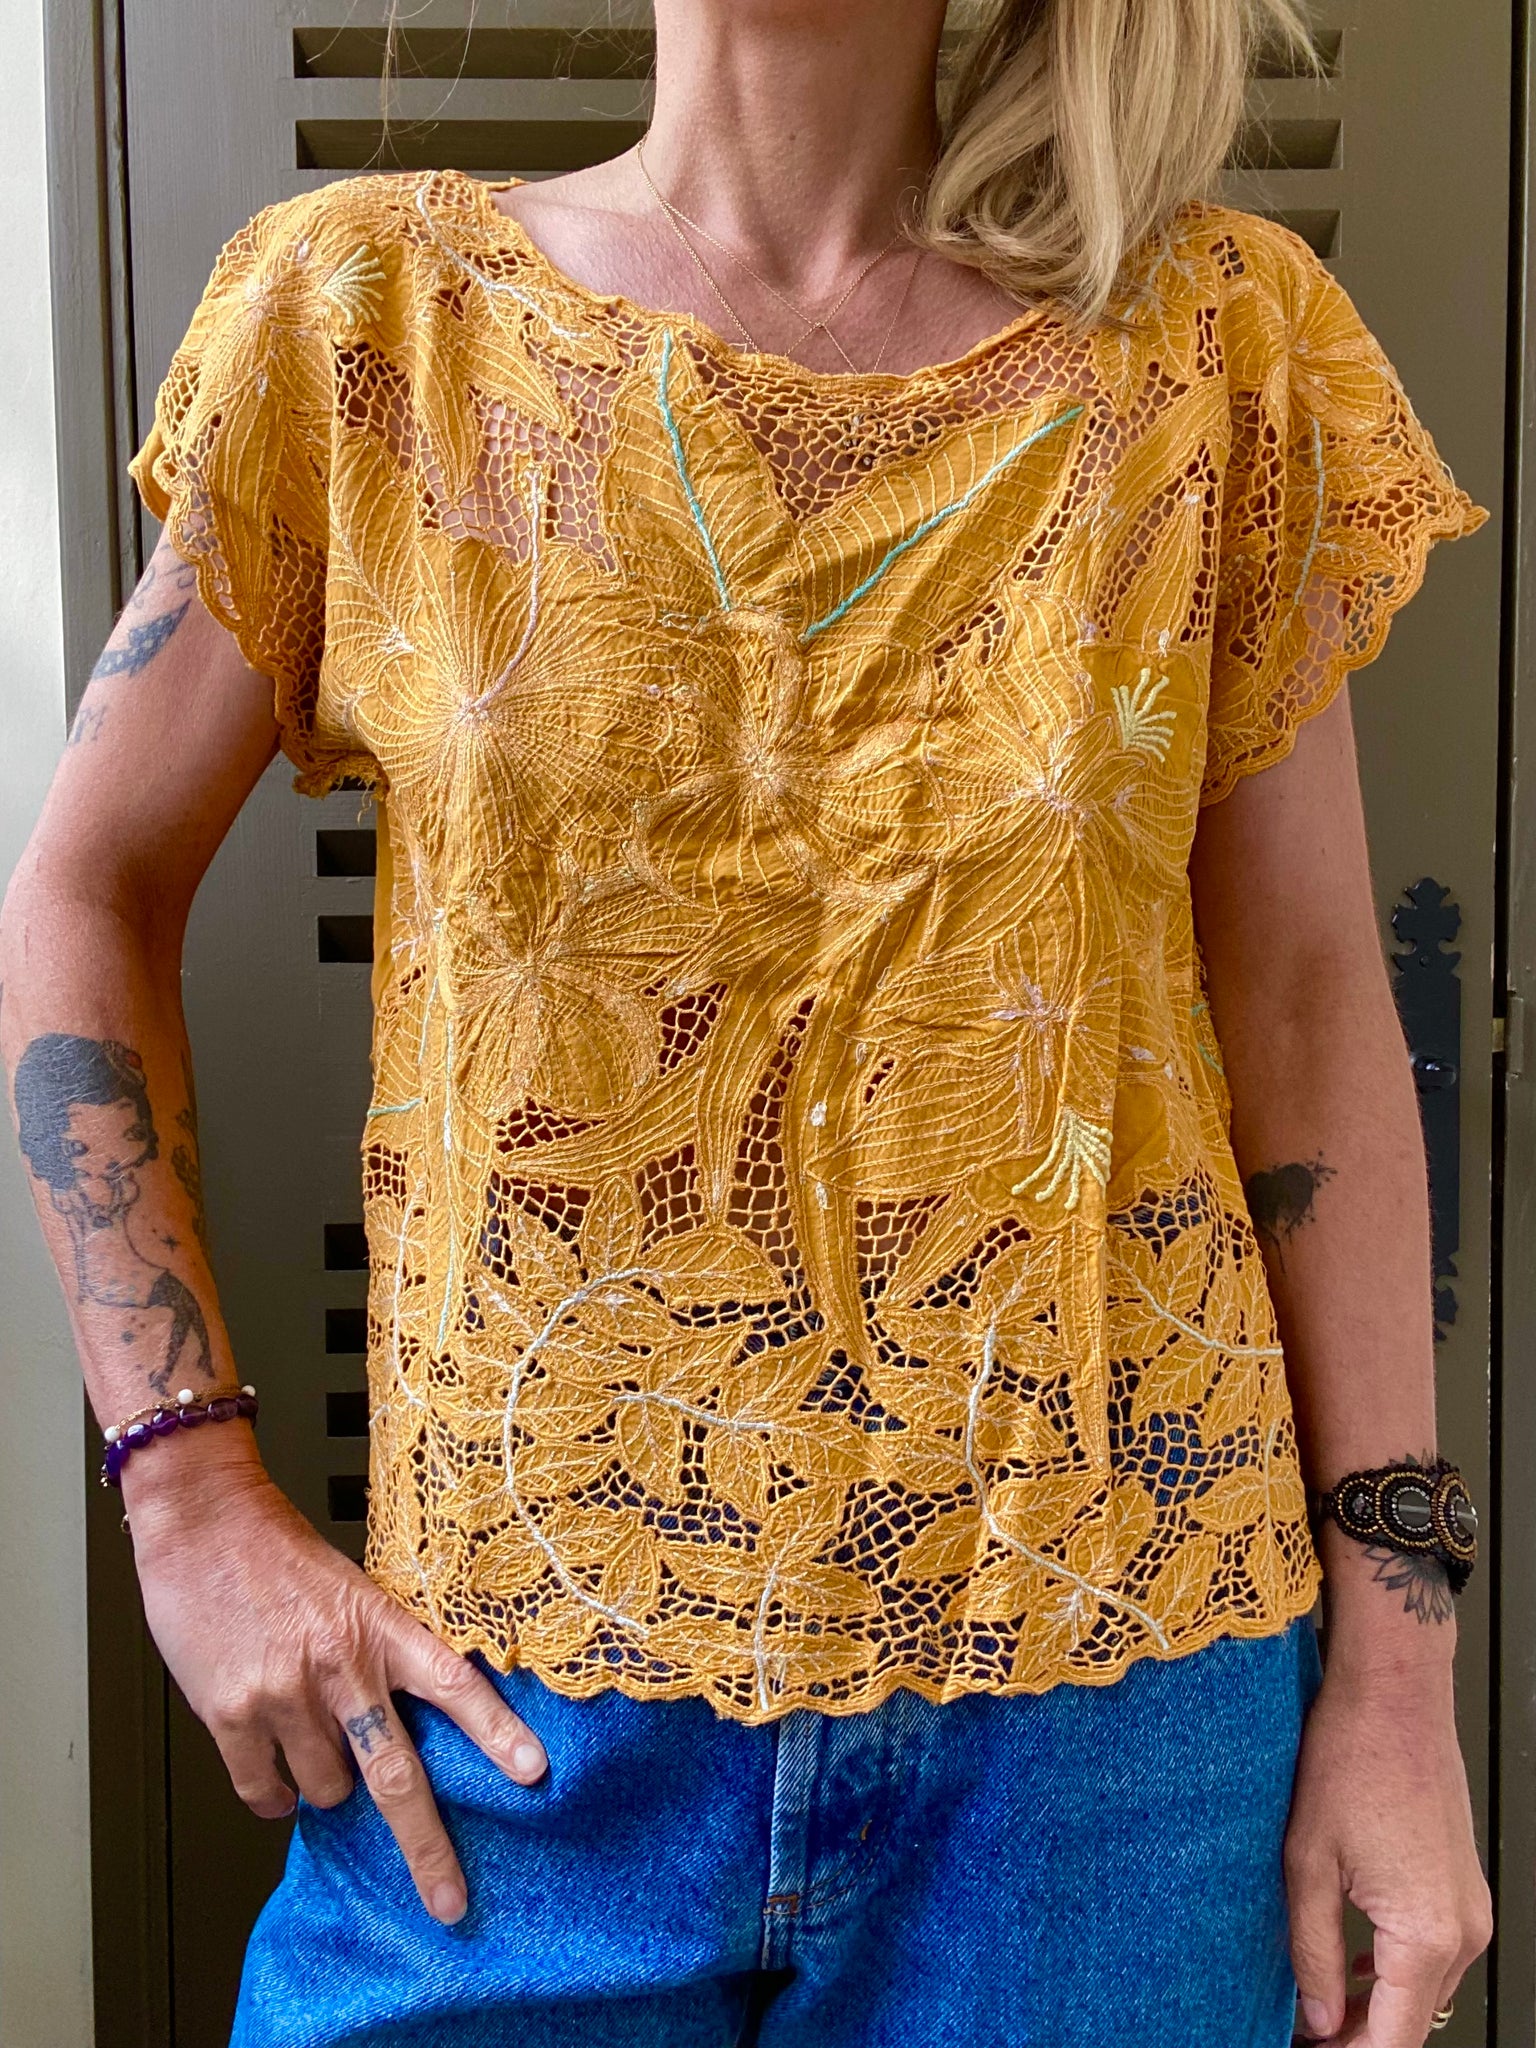 Magnifique blouse en viscose des années 90 avec broderies ajourées